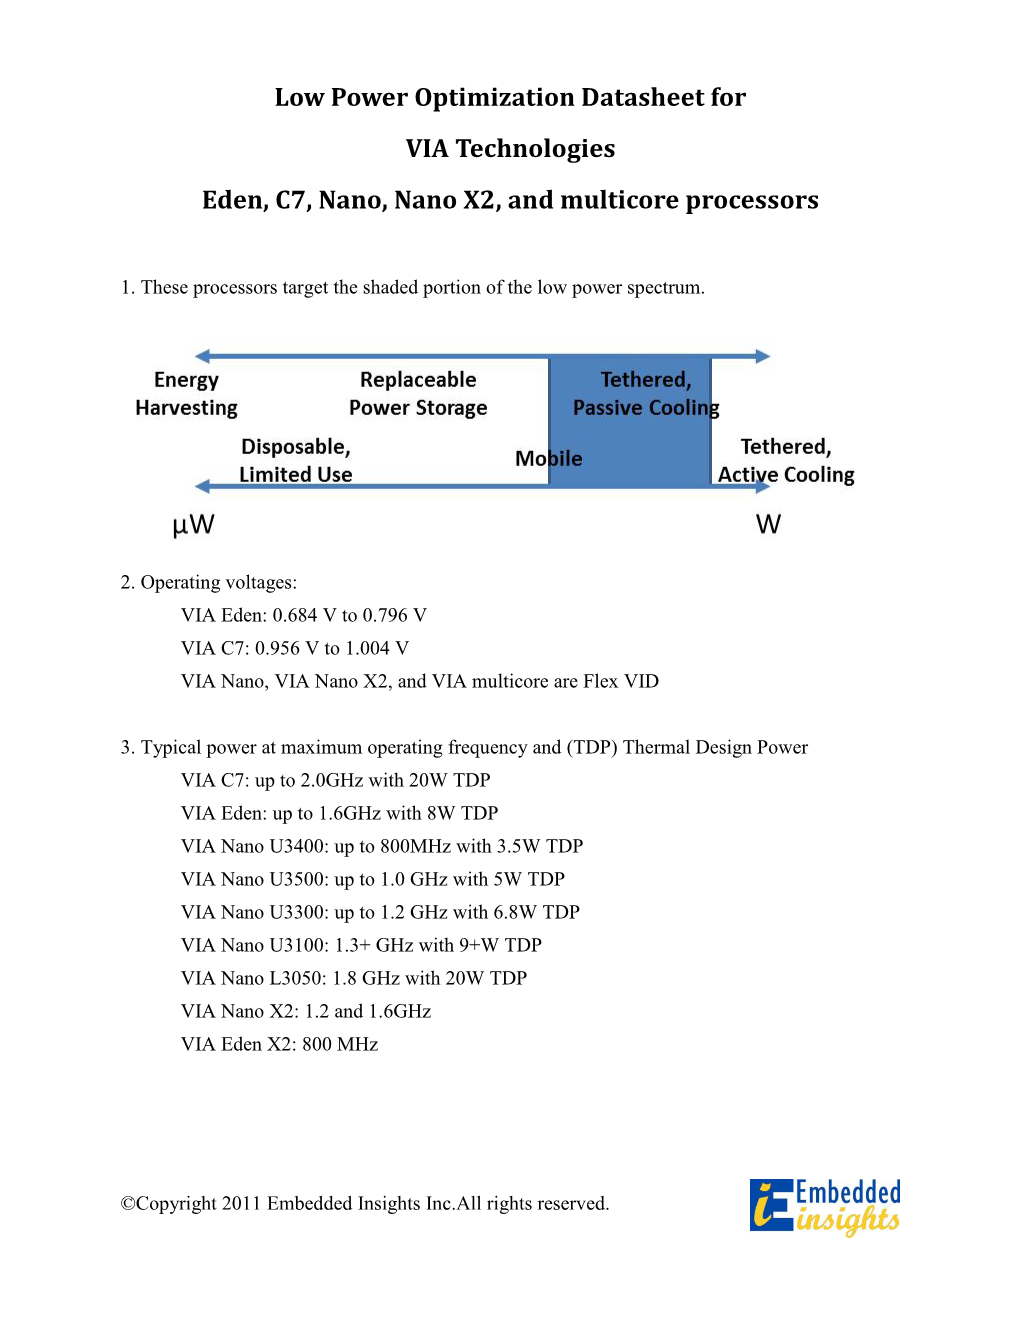 Eden, C7, Nano, Nano X2, and Multicore Processors